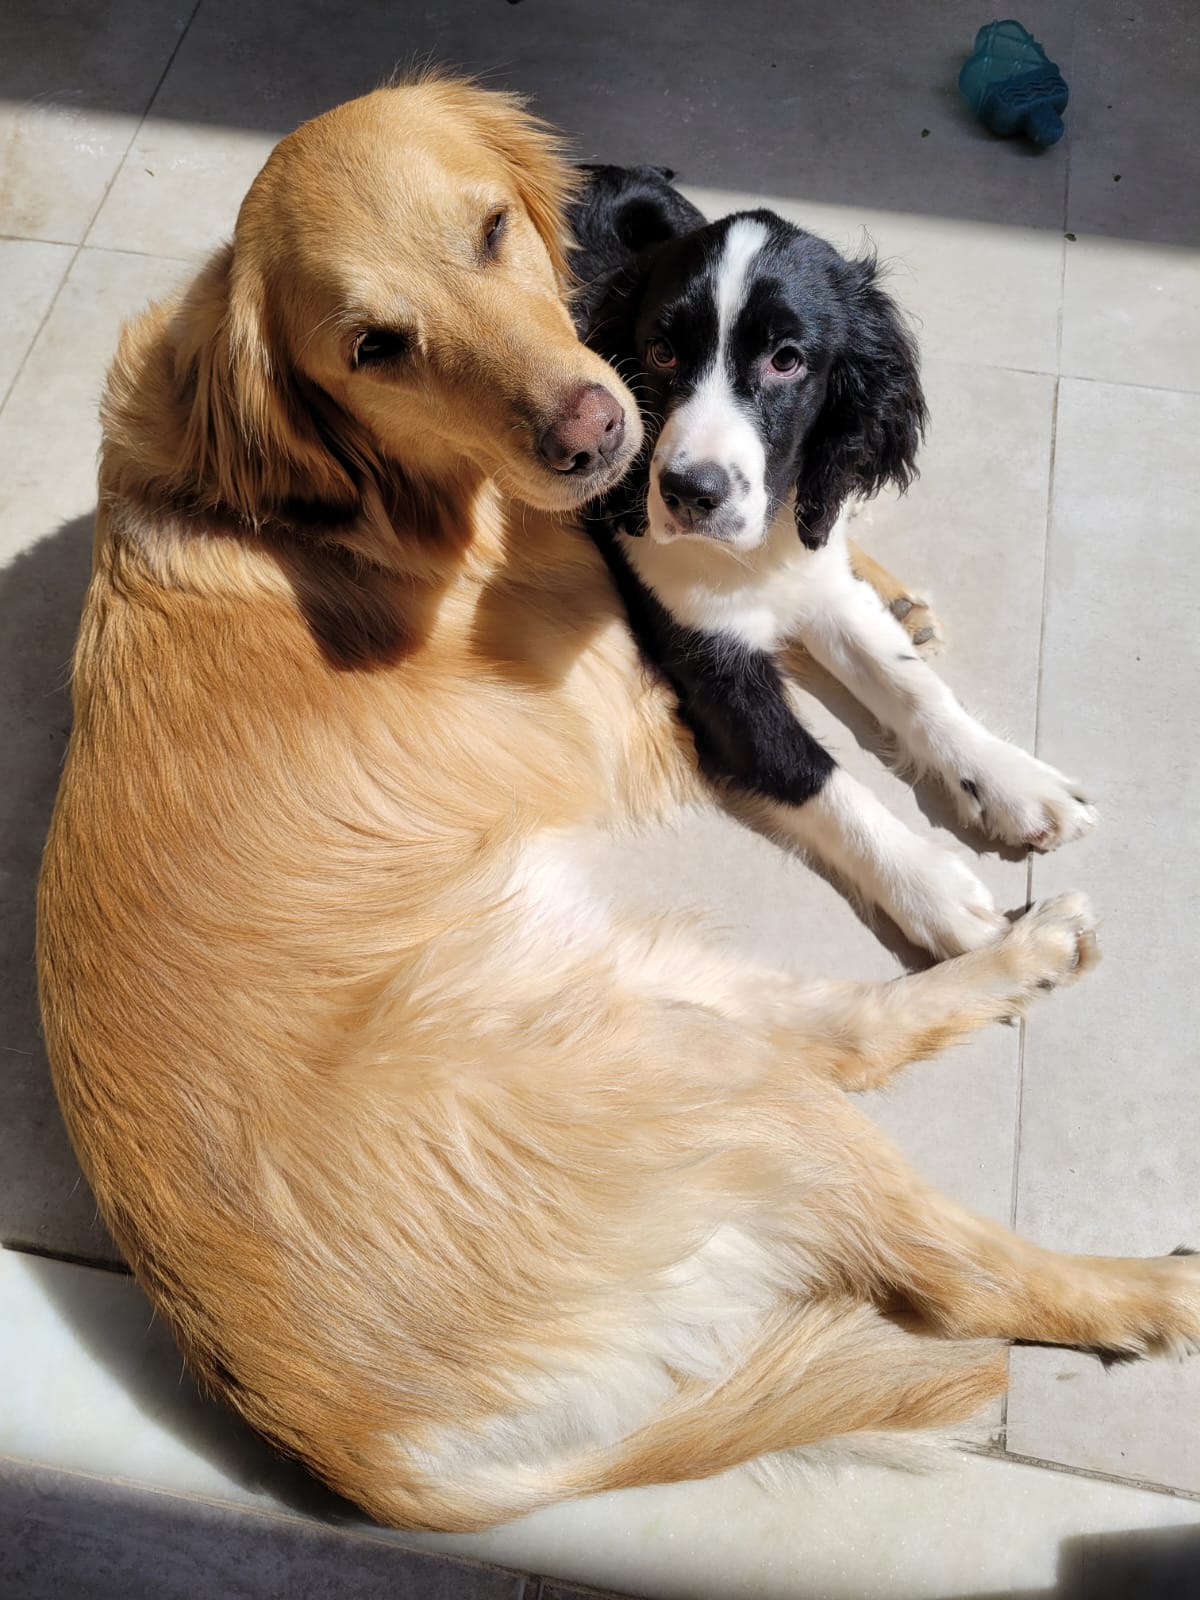 Skyy e sua melhor amiga canina, a Golden Retriever chamada Tequila